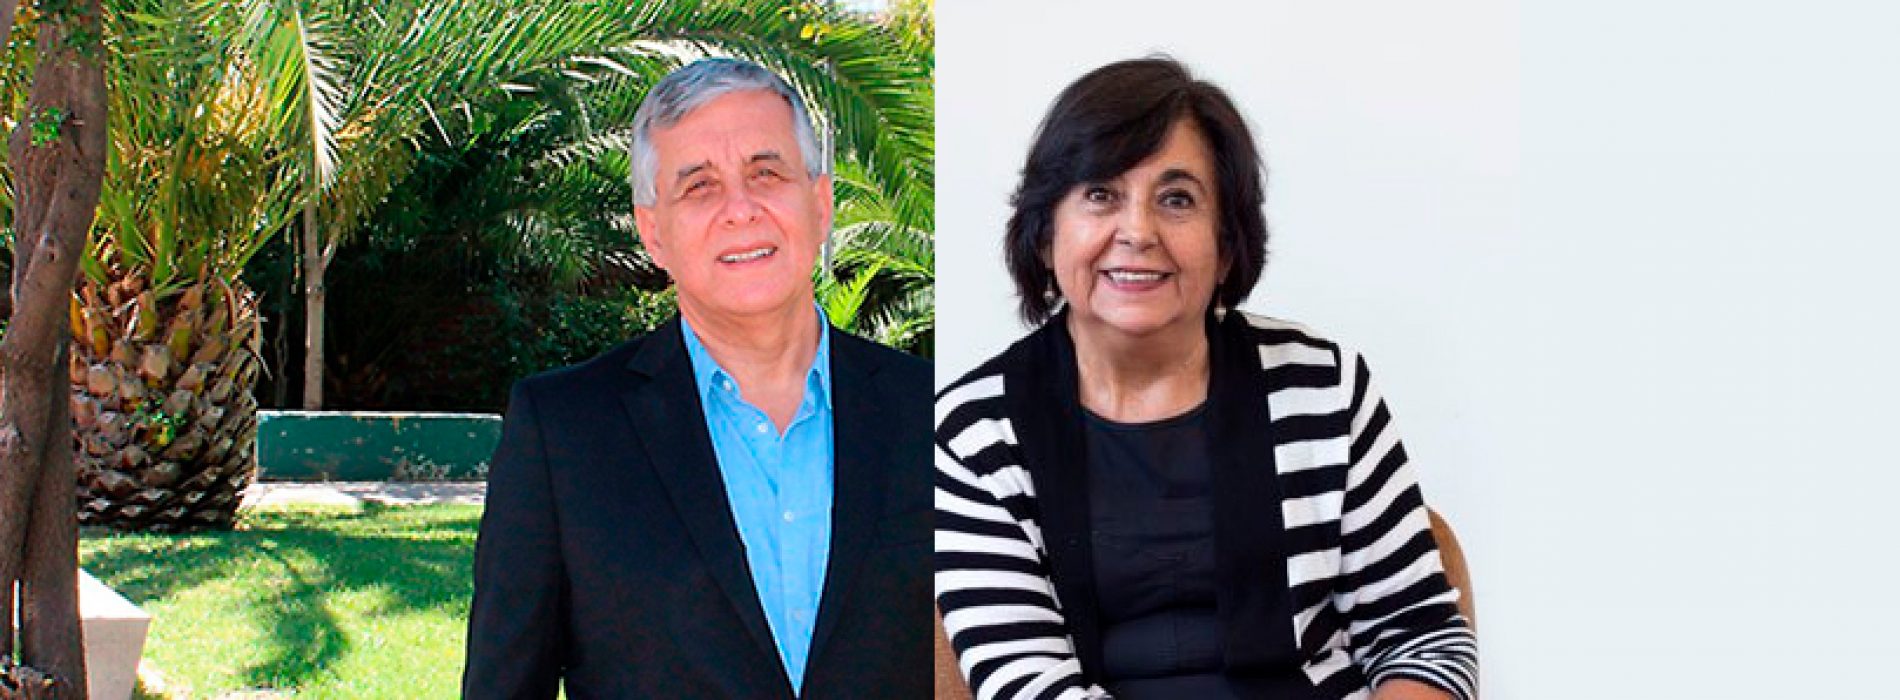 Nuestros socios Cecilia Hidalgo y Sergio Lavandero (Ex presidente) son elegidos de forma unánime como Presidenta y Vice-Presidente de la Academia Chilena de Ciencias del Instituto de Chile